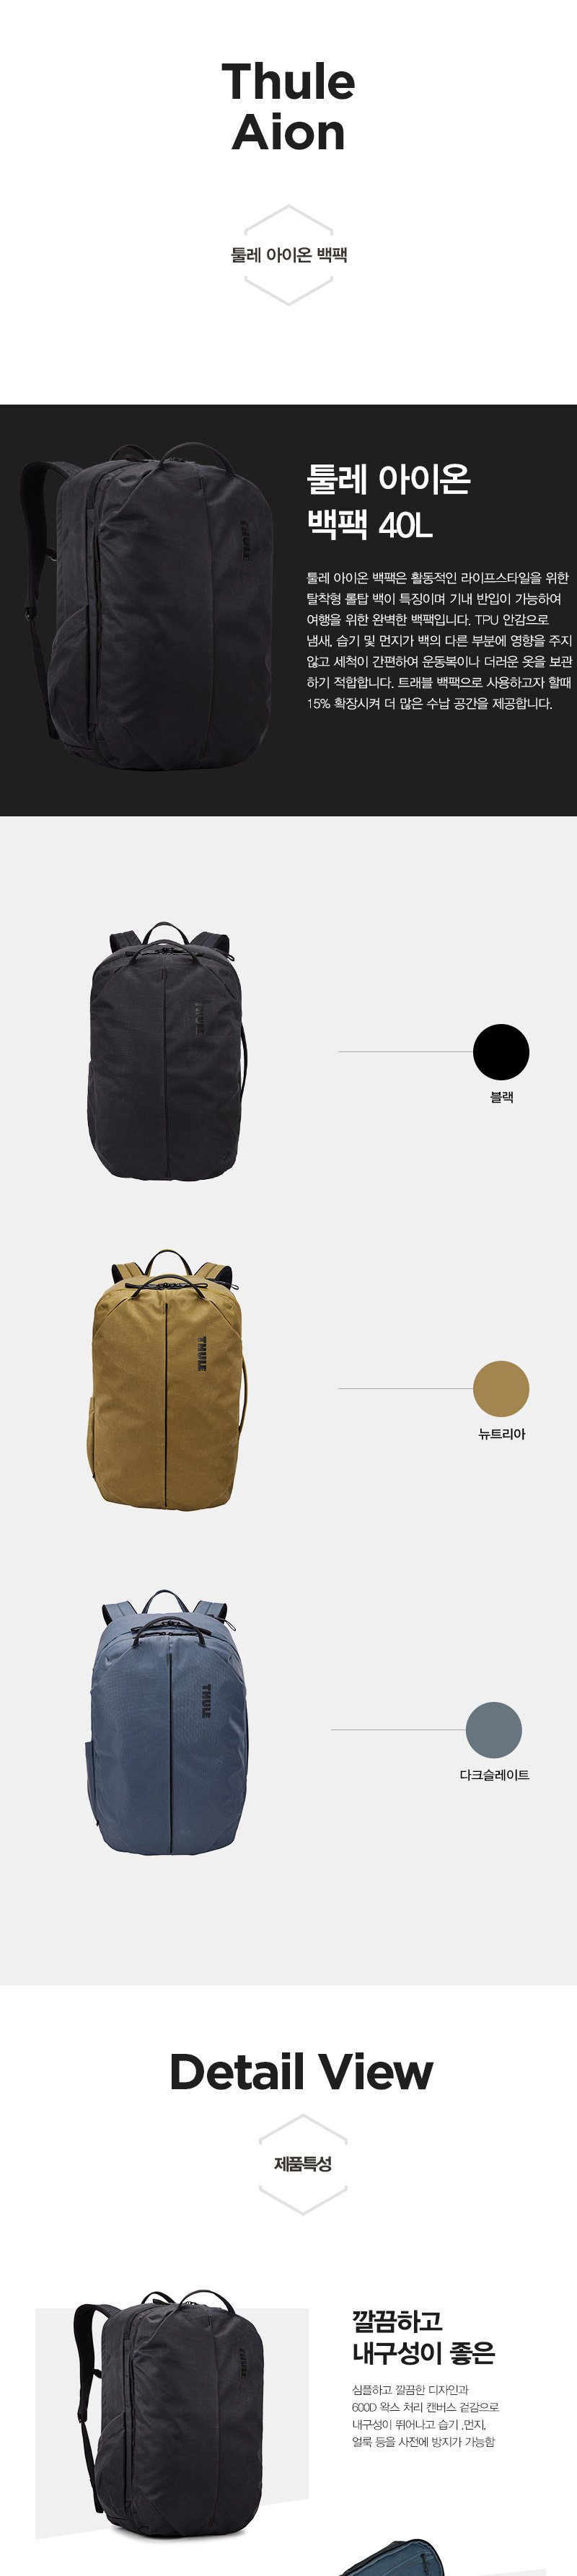 Aion-Backpack-40-1.jpg